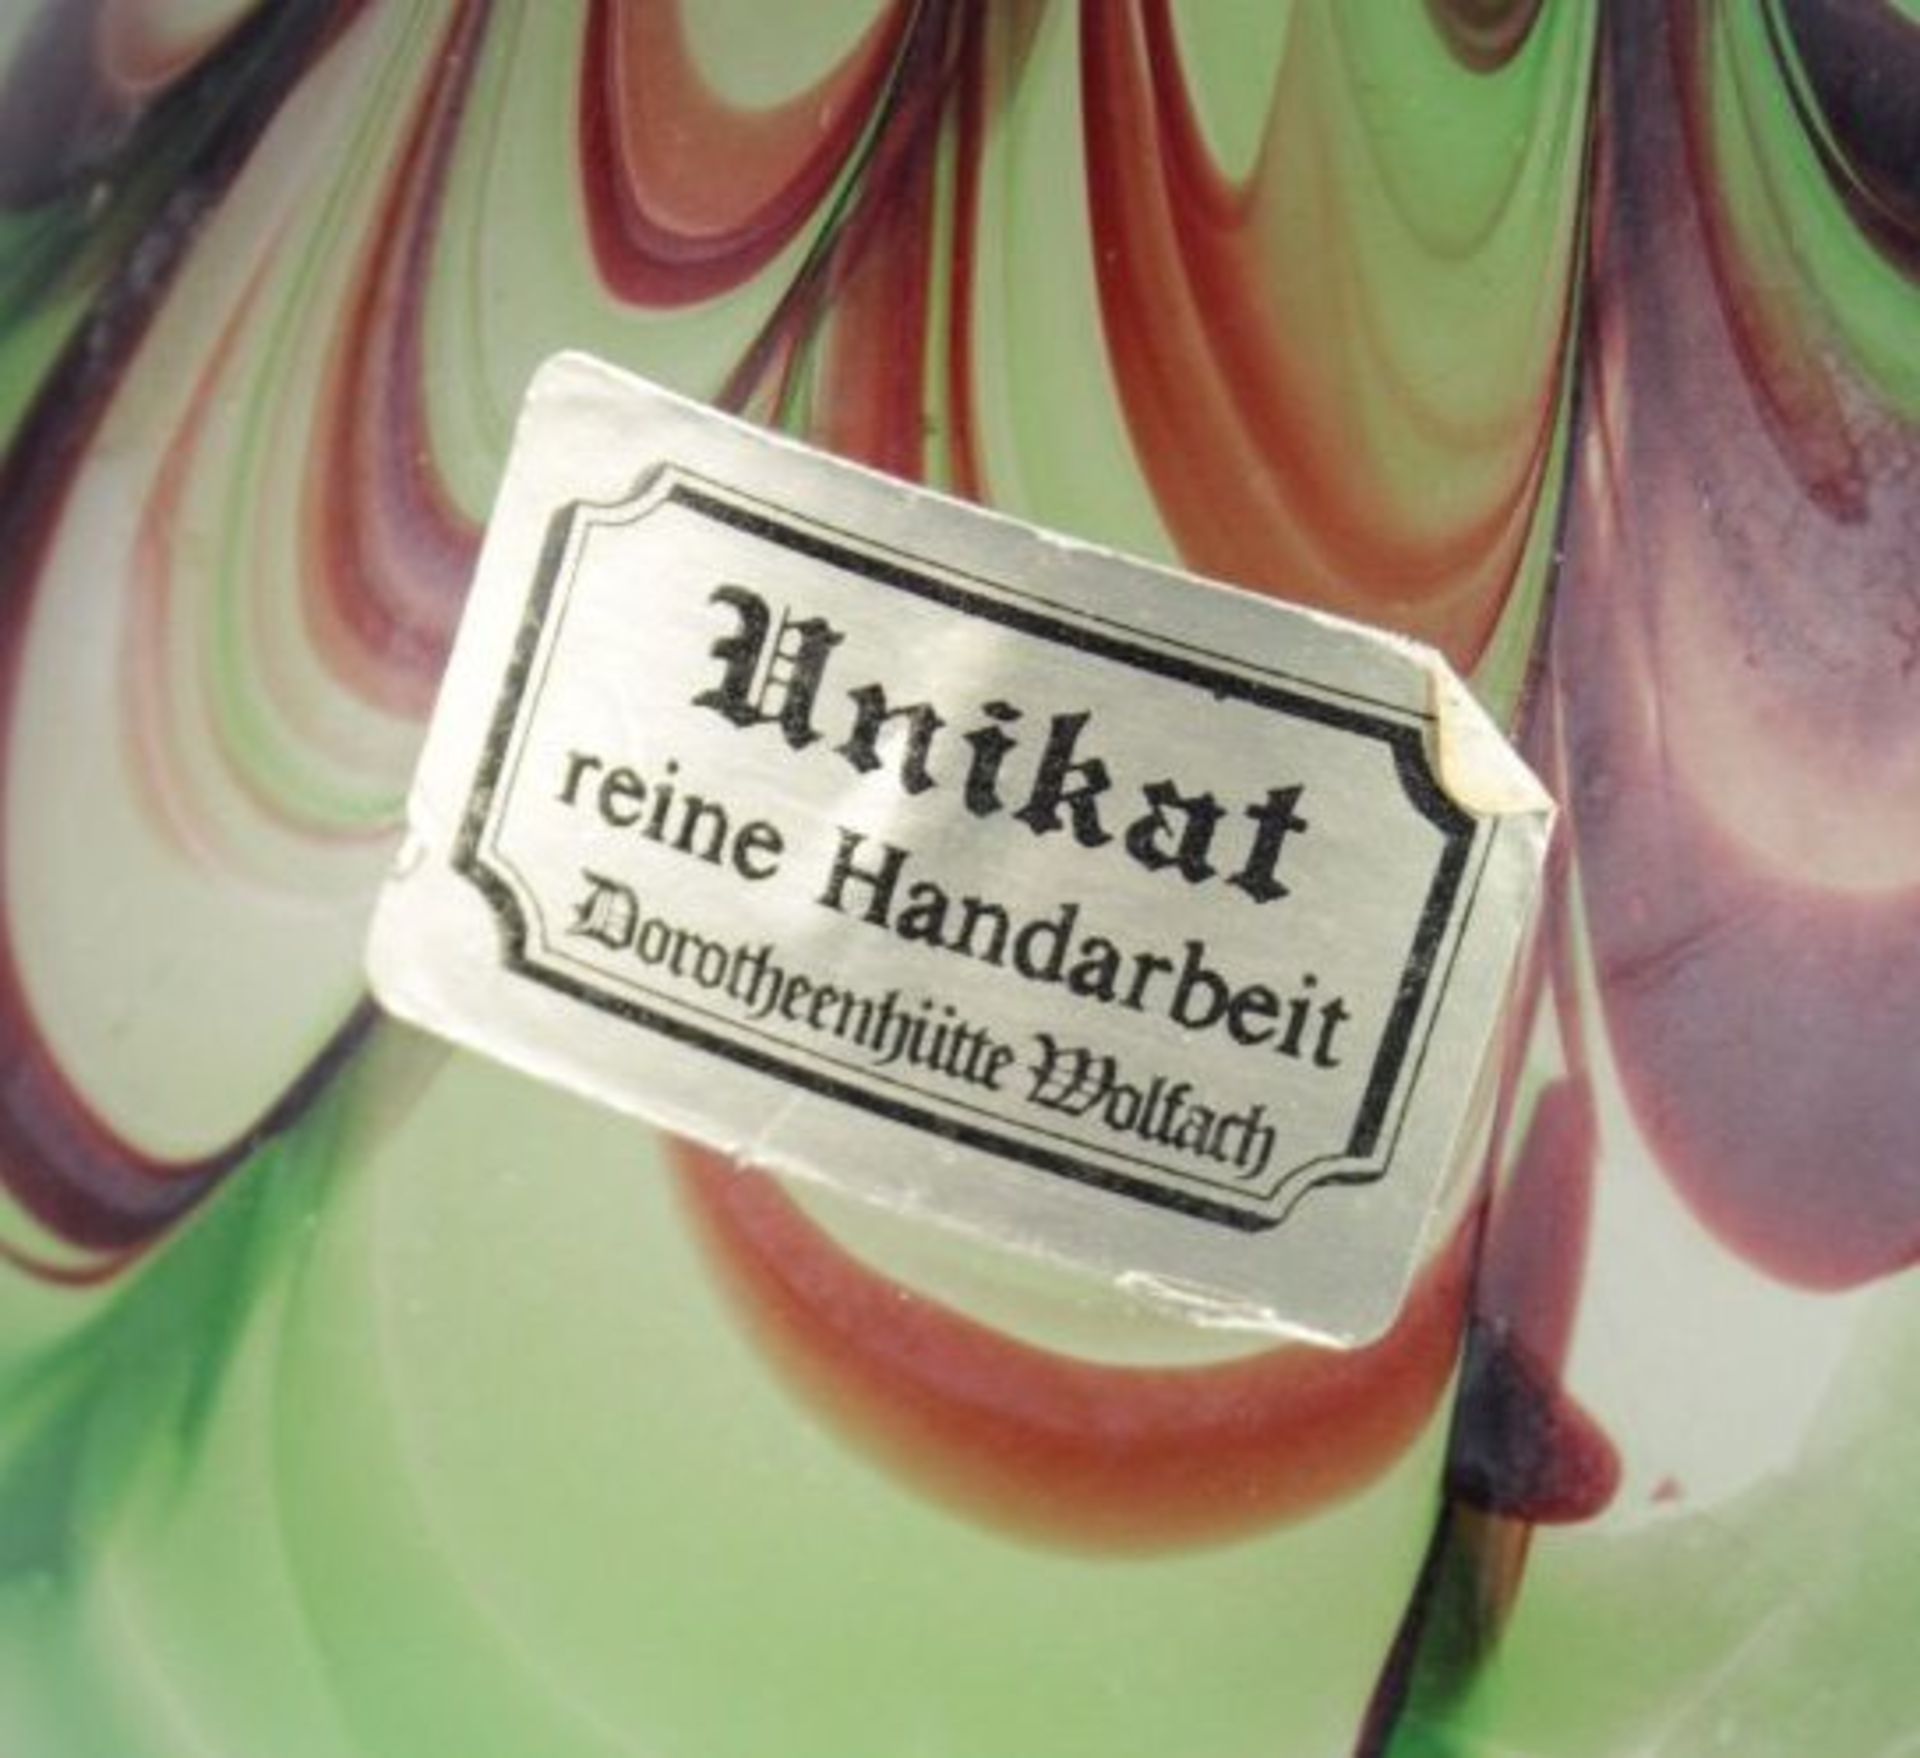 Kunstglasvase, Dorotheenhütte, 2farbig, H-27cm.- - -22.61 % buyer's premium on the hammer priceVAT - Bild 2 aus 2